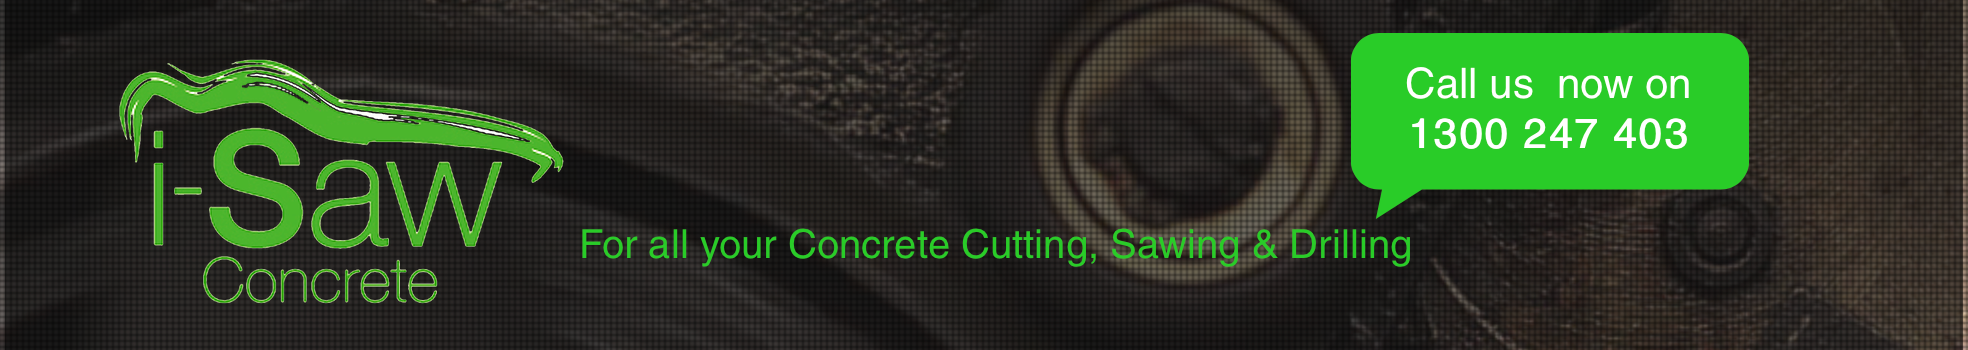 i-Saw Concrete